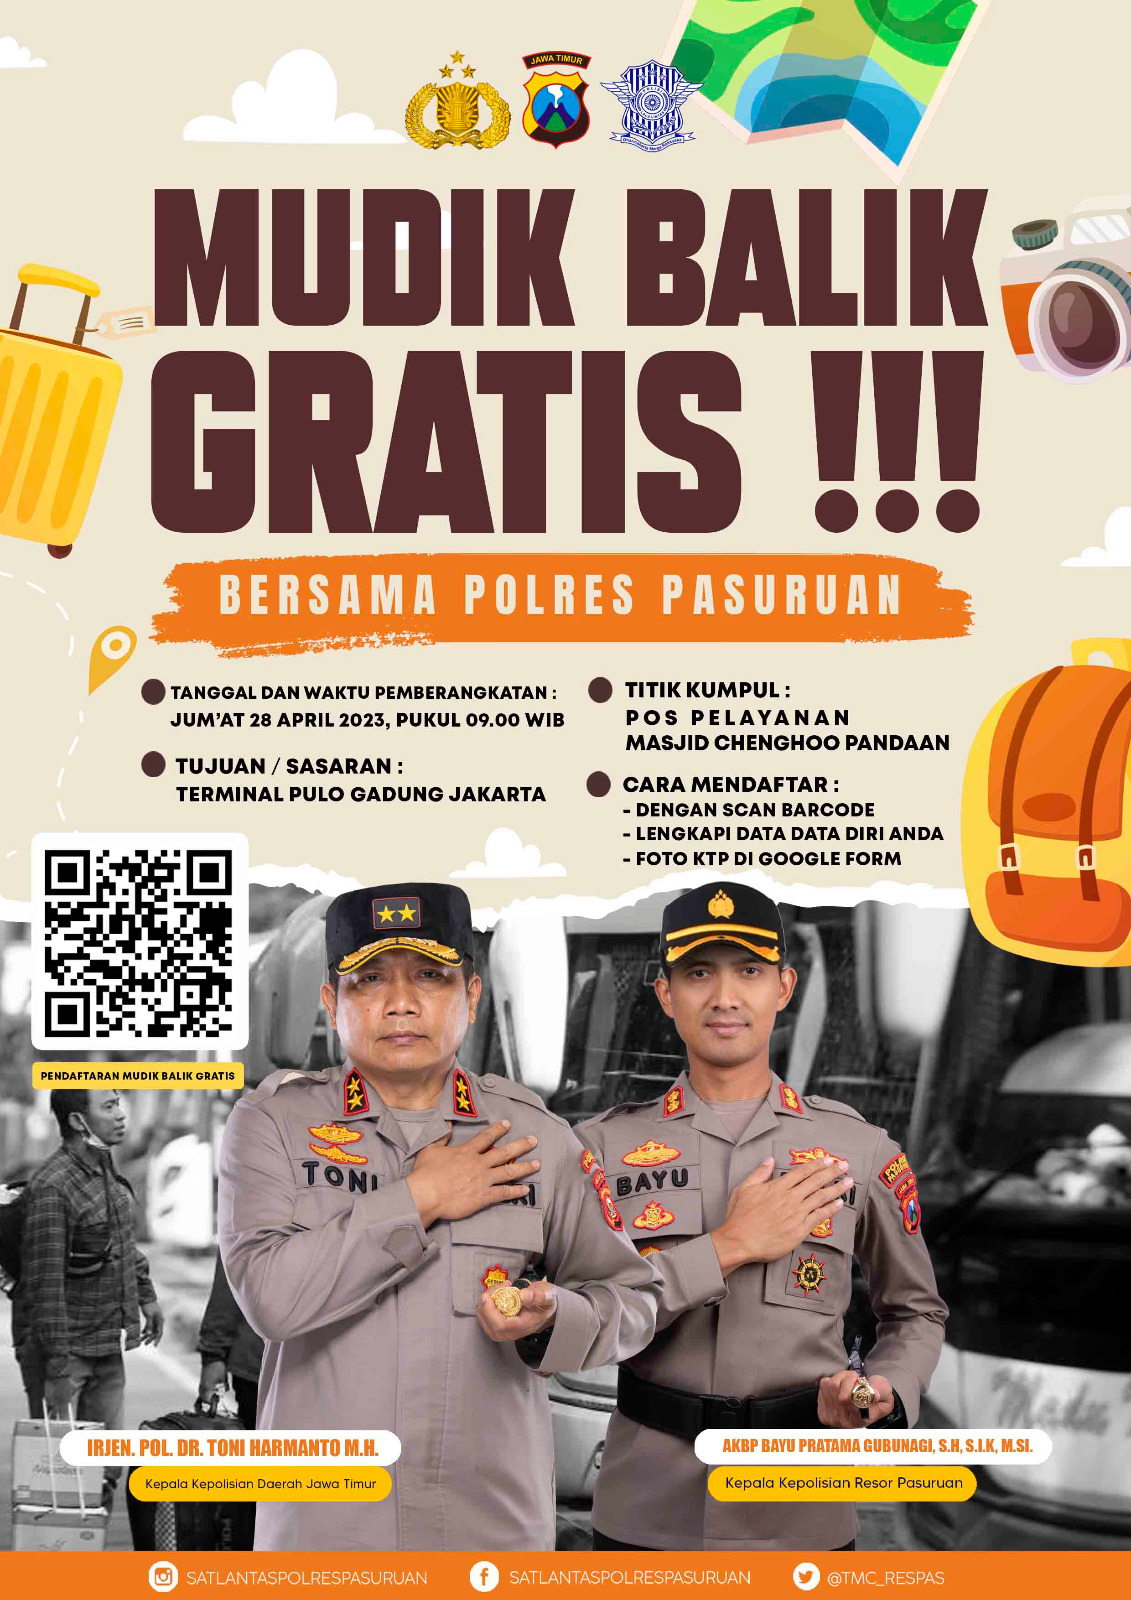 Ingin Balik ke Jakarta, Polres Pasuruan Beri Layanan Balik Mudik Gratis